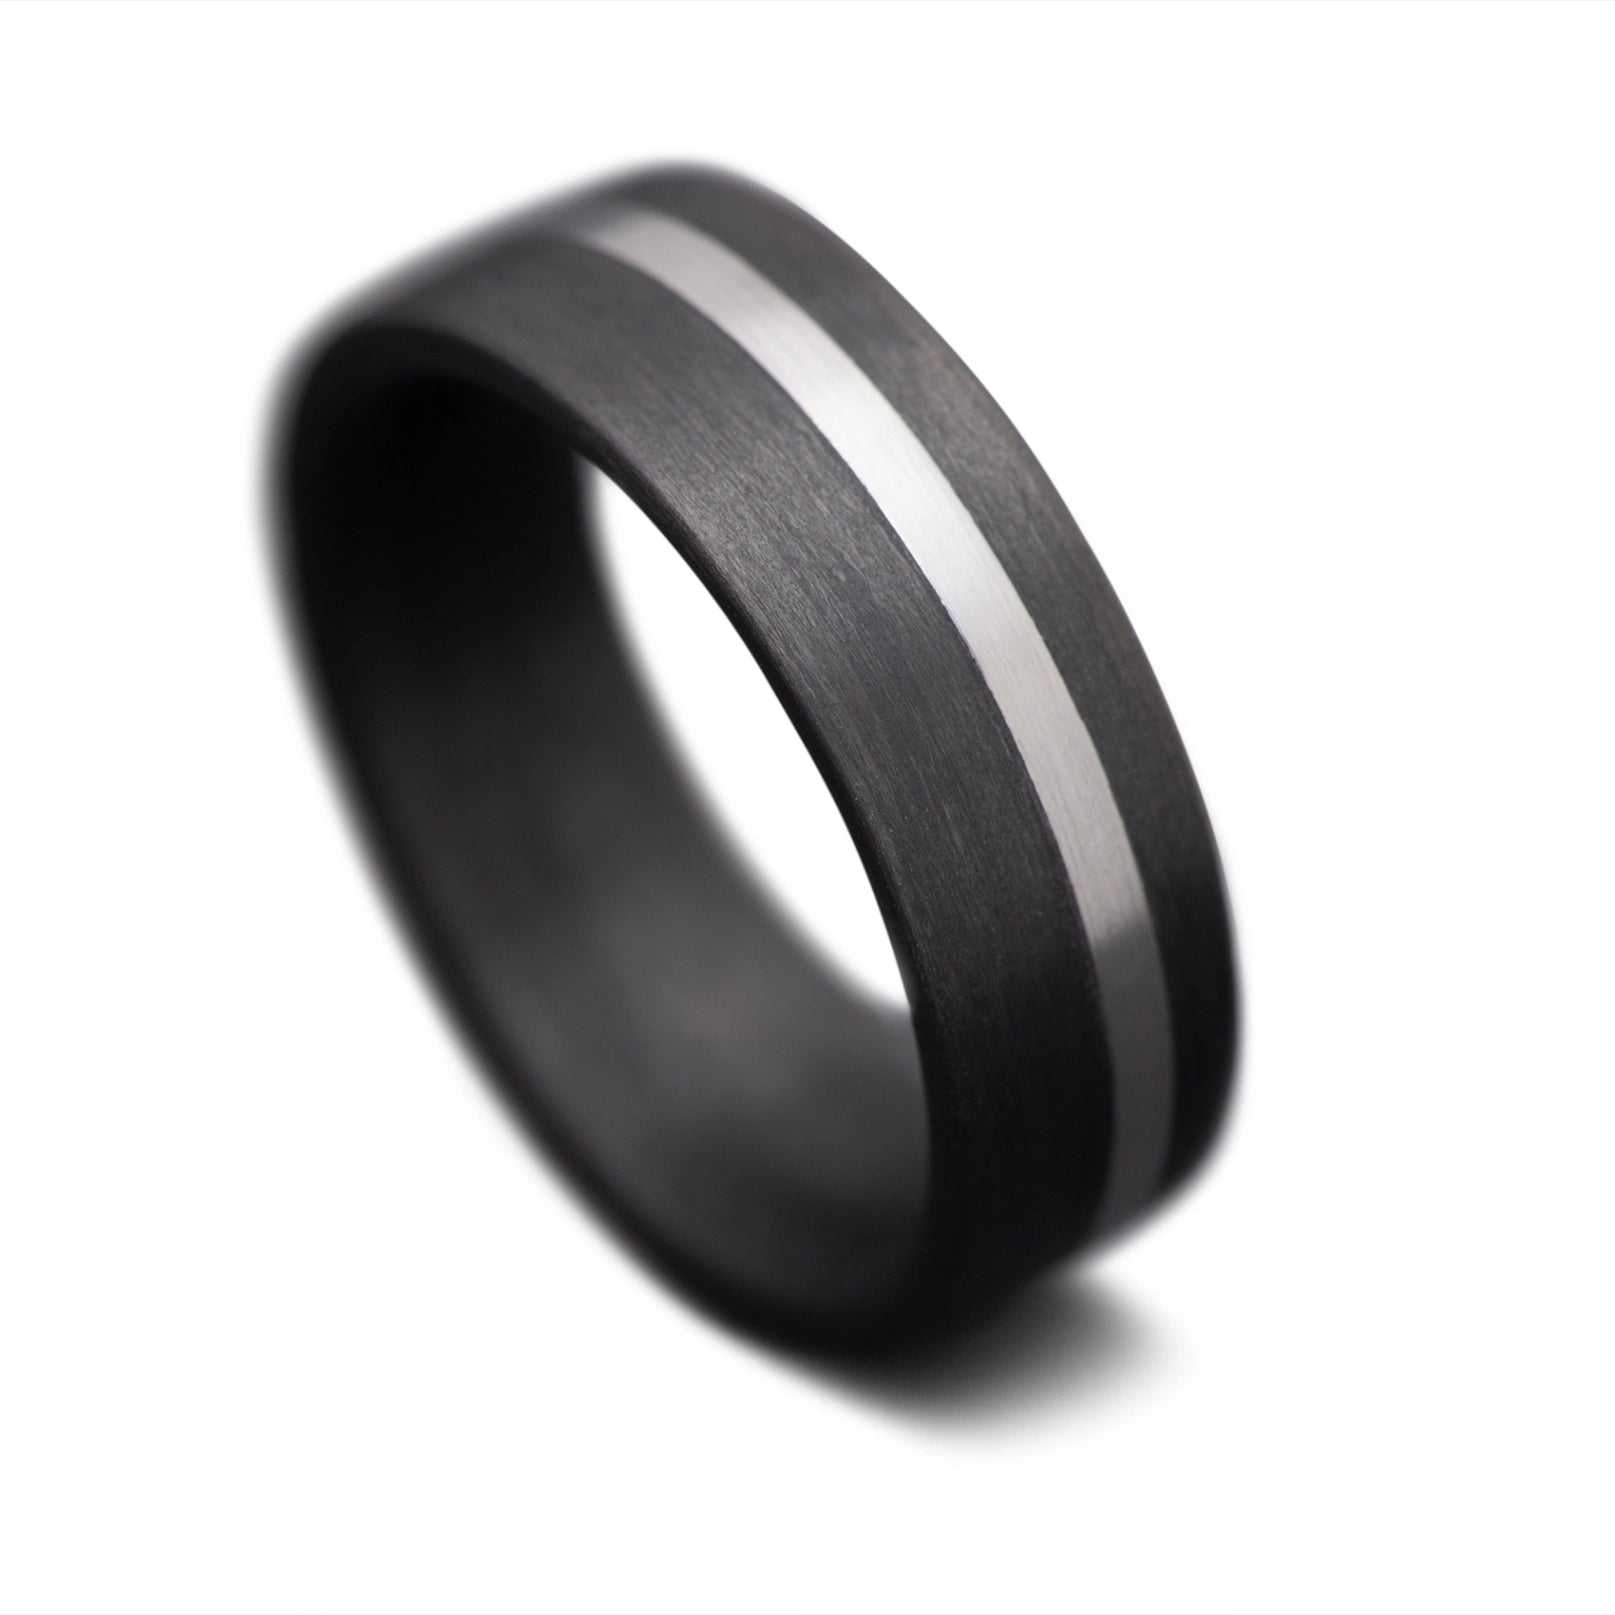  CarbonUni core ring with Titanium inlay, 7mm -THE VERTEX